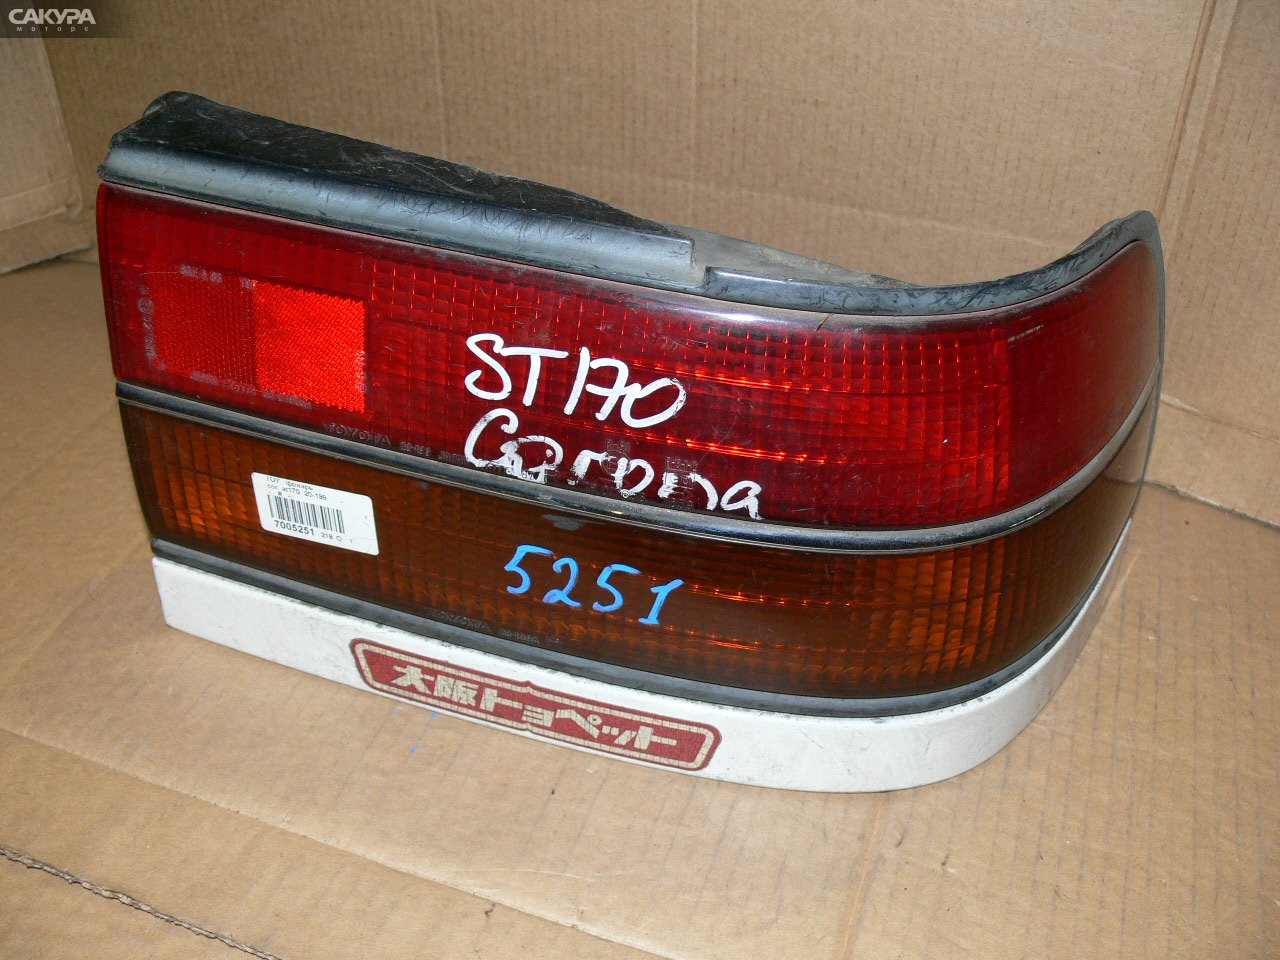 Фонарь стоп-сигнала правый Toyota Corona AT170 20-199: купить в Сакура Иркутск.